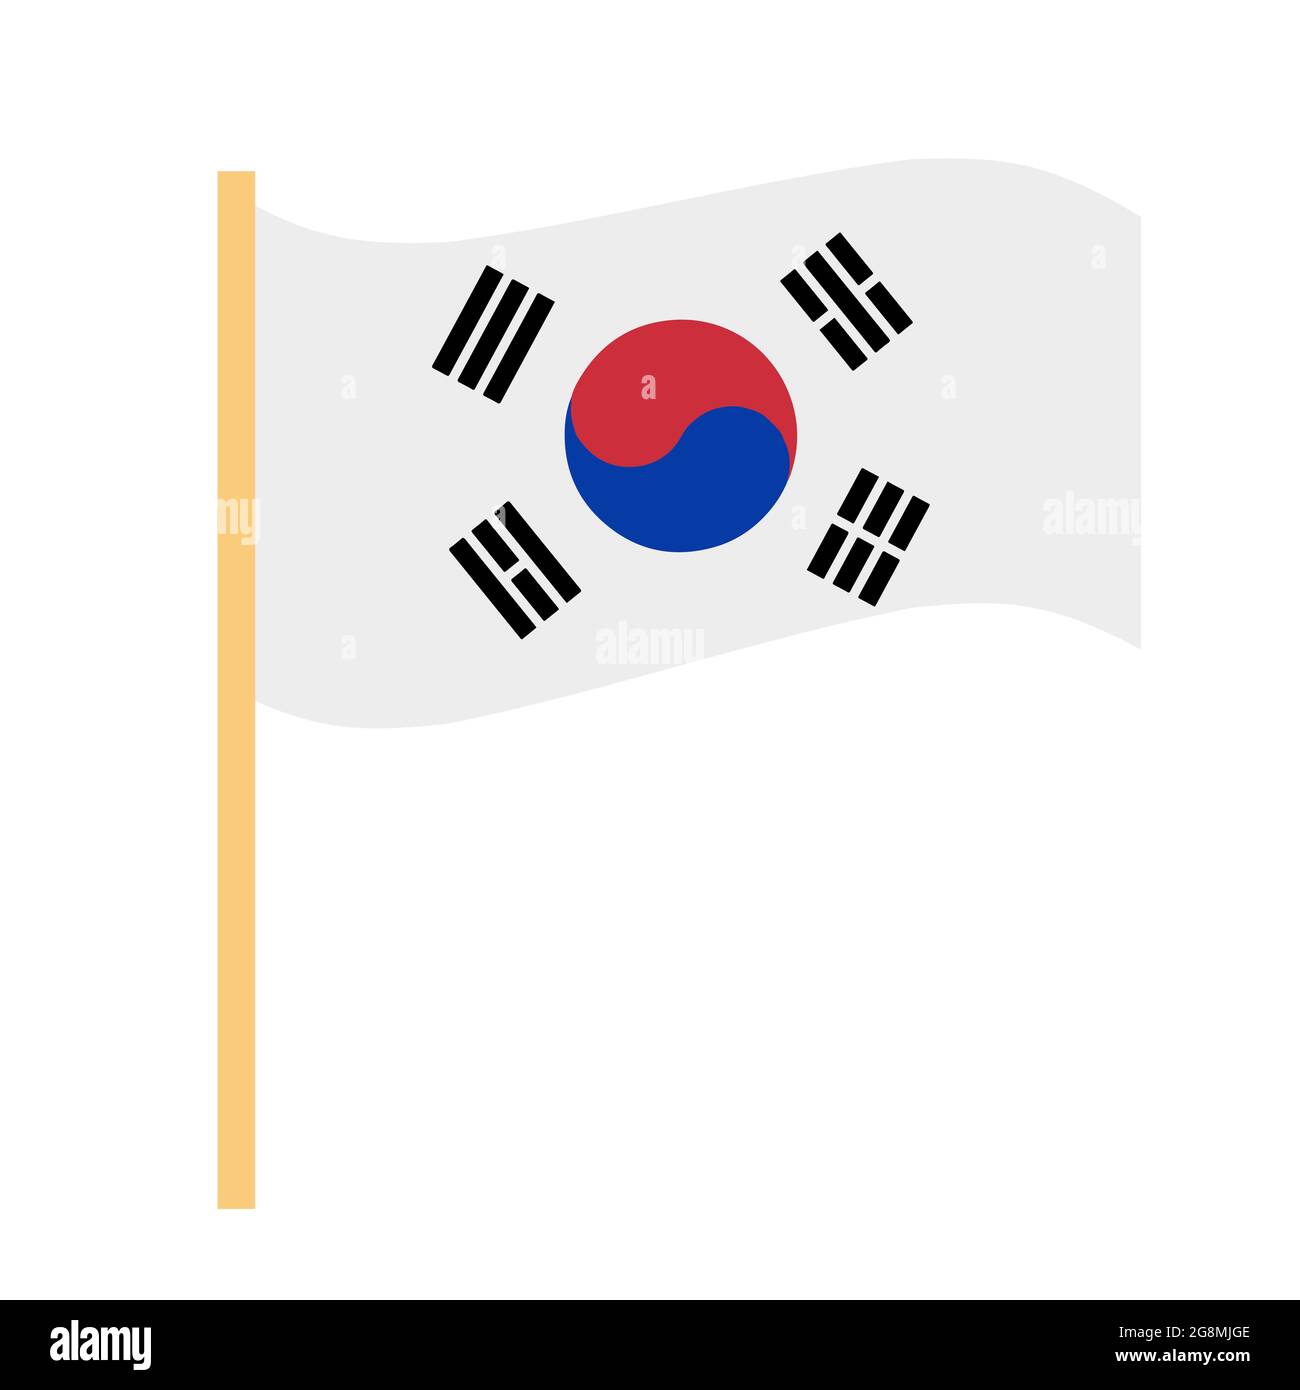 Cùng xem các biểu tượng của cờ Hàn Quốc được tạo hình phẳng phiu trên nền trắng tinh khôi. Tuy giản đơn nhưng chúng mang trong mình ý nghĩa và tầm quan trọng vô cùng lớn với đất nước Hàn Quốc. Hãy bấm vào hình và khám phá thế giới cờ hiệu của Hàn Quốc.